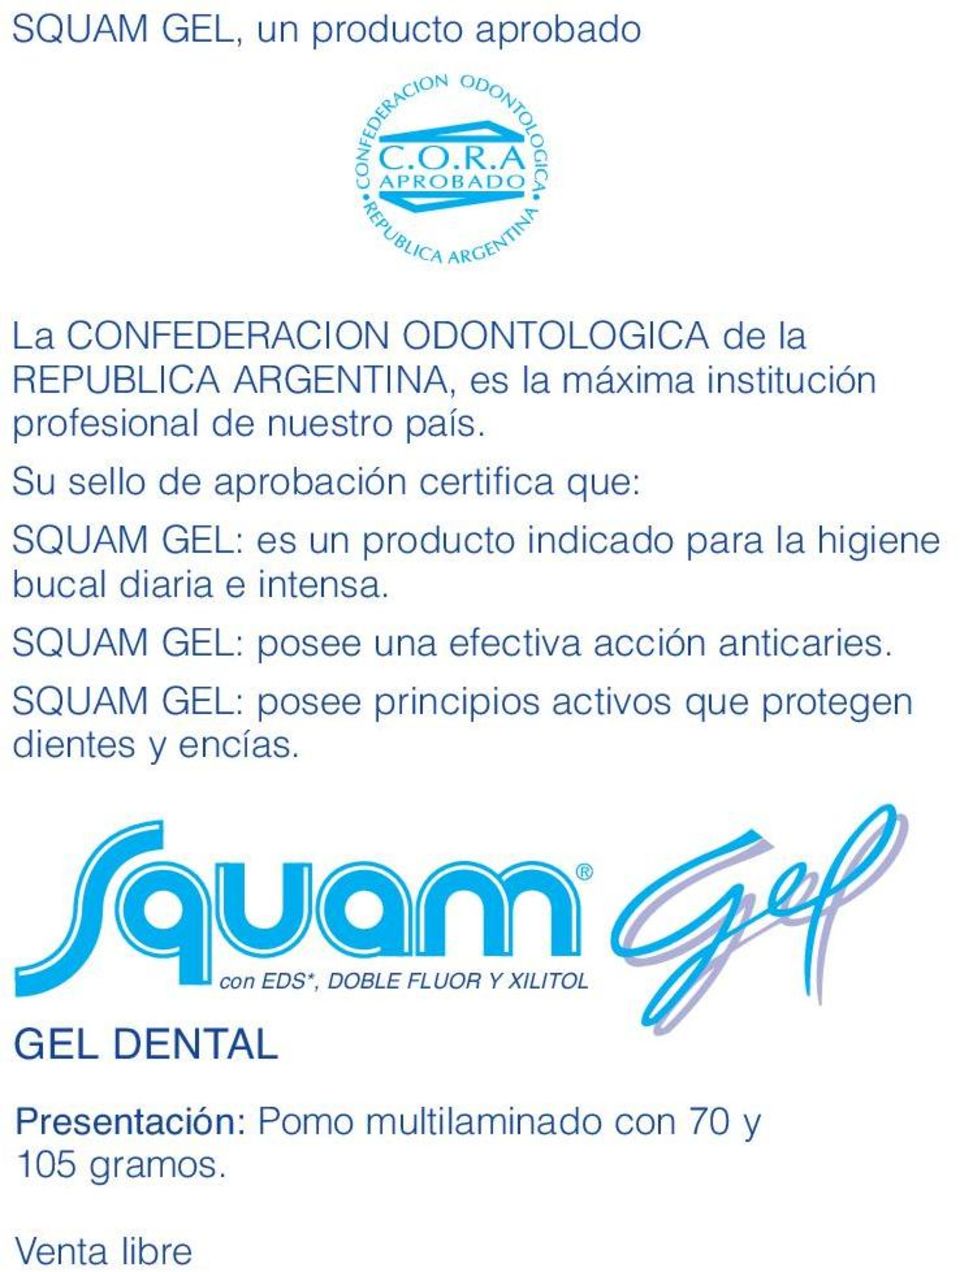 Su sello de aprobación certifica que: SQUAM GEL: es un producto indicado para la higiene bucal diaria e intensa.